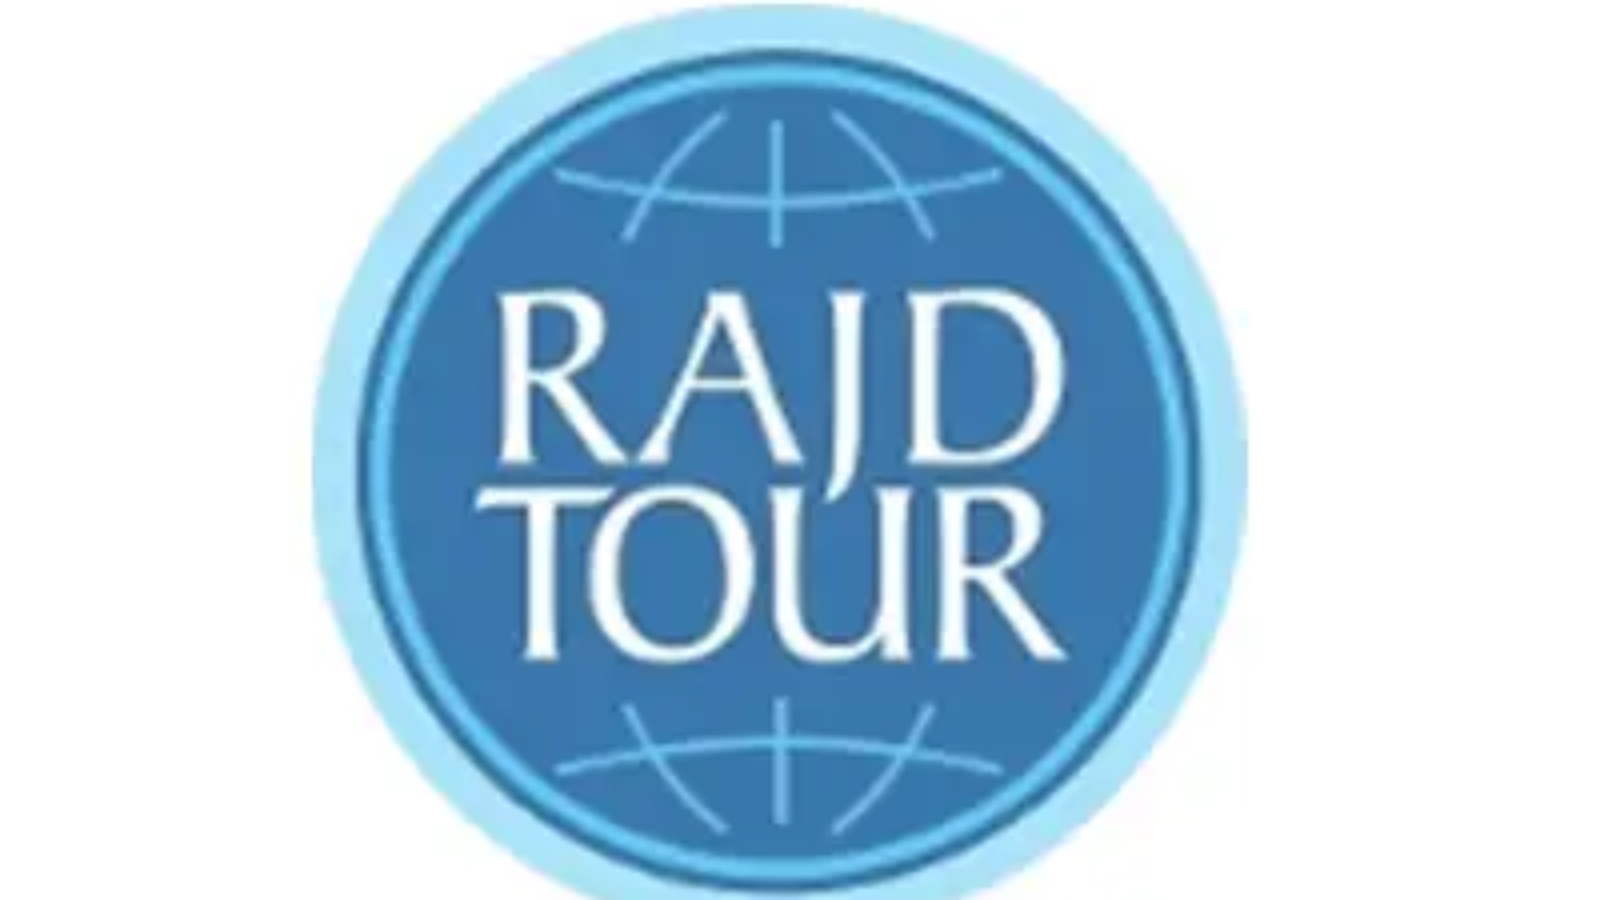 Rajdtour_logo